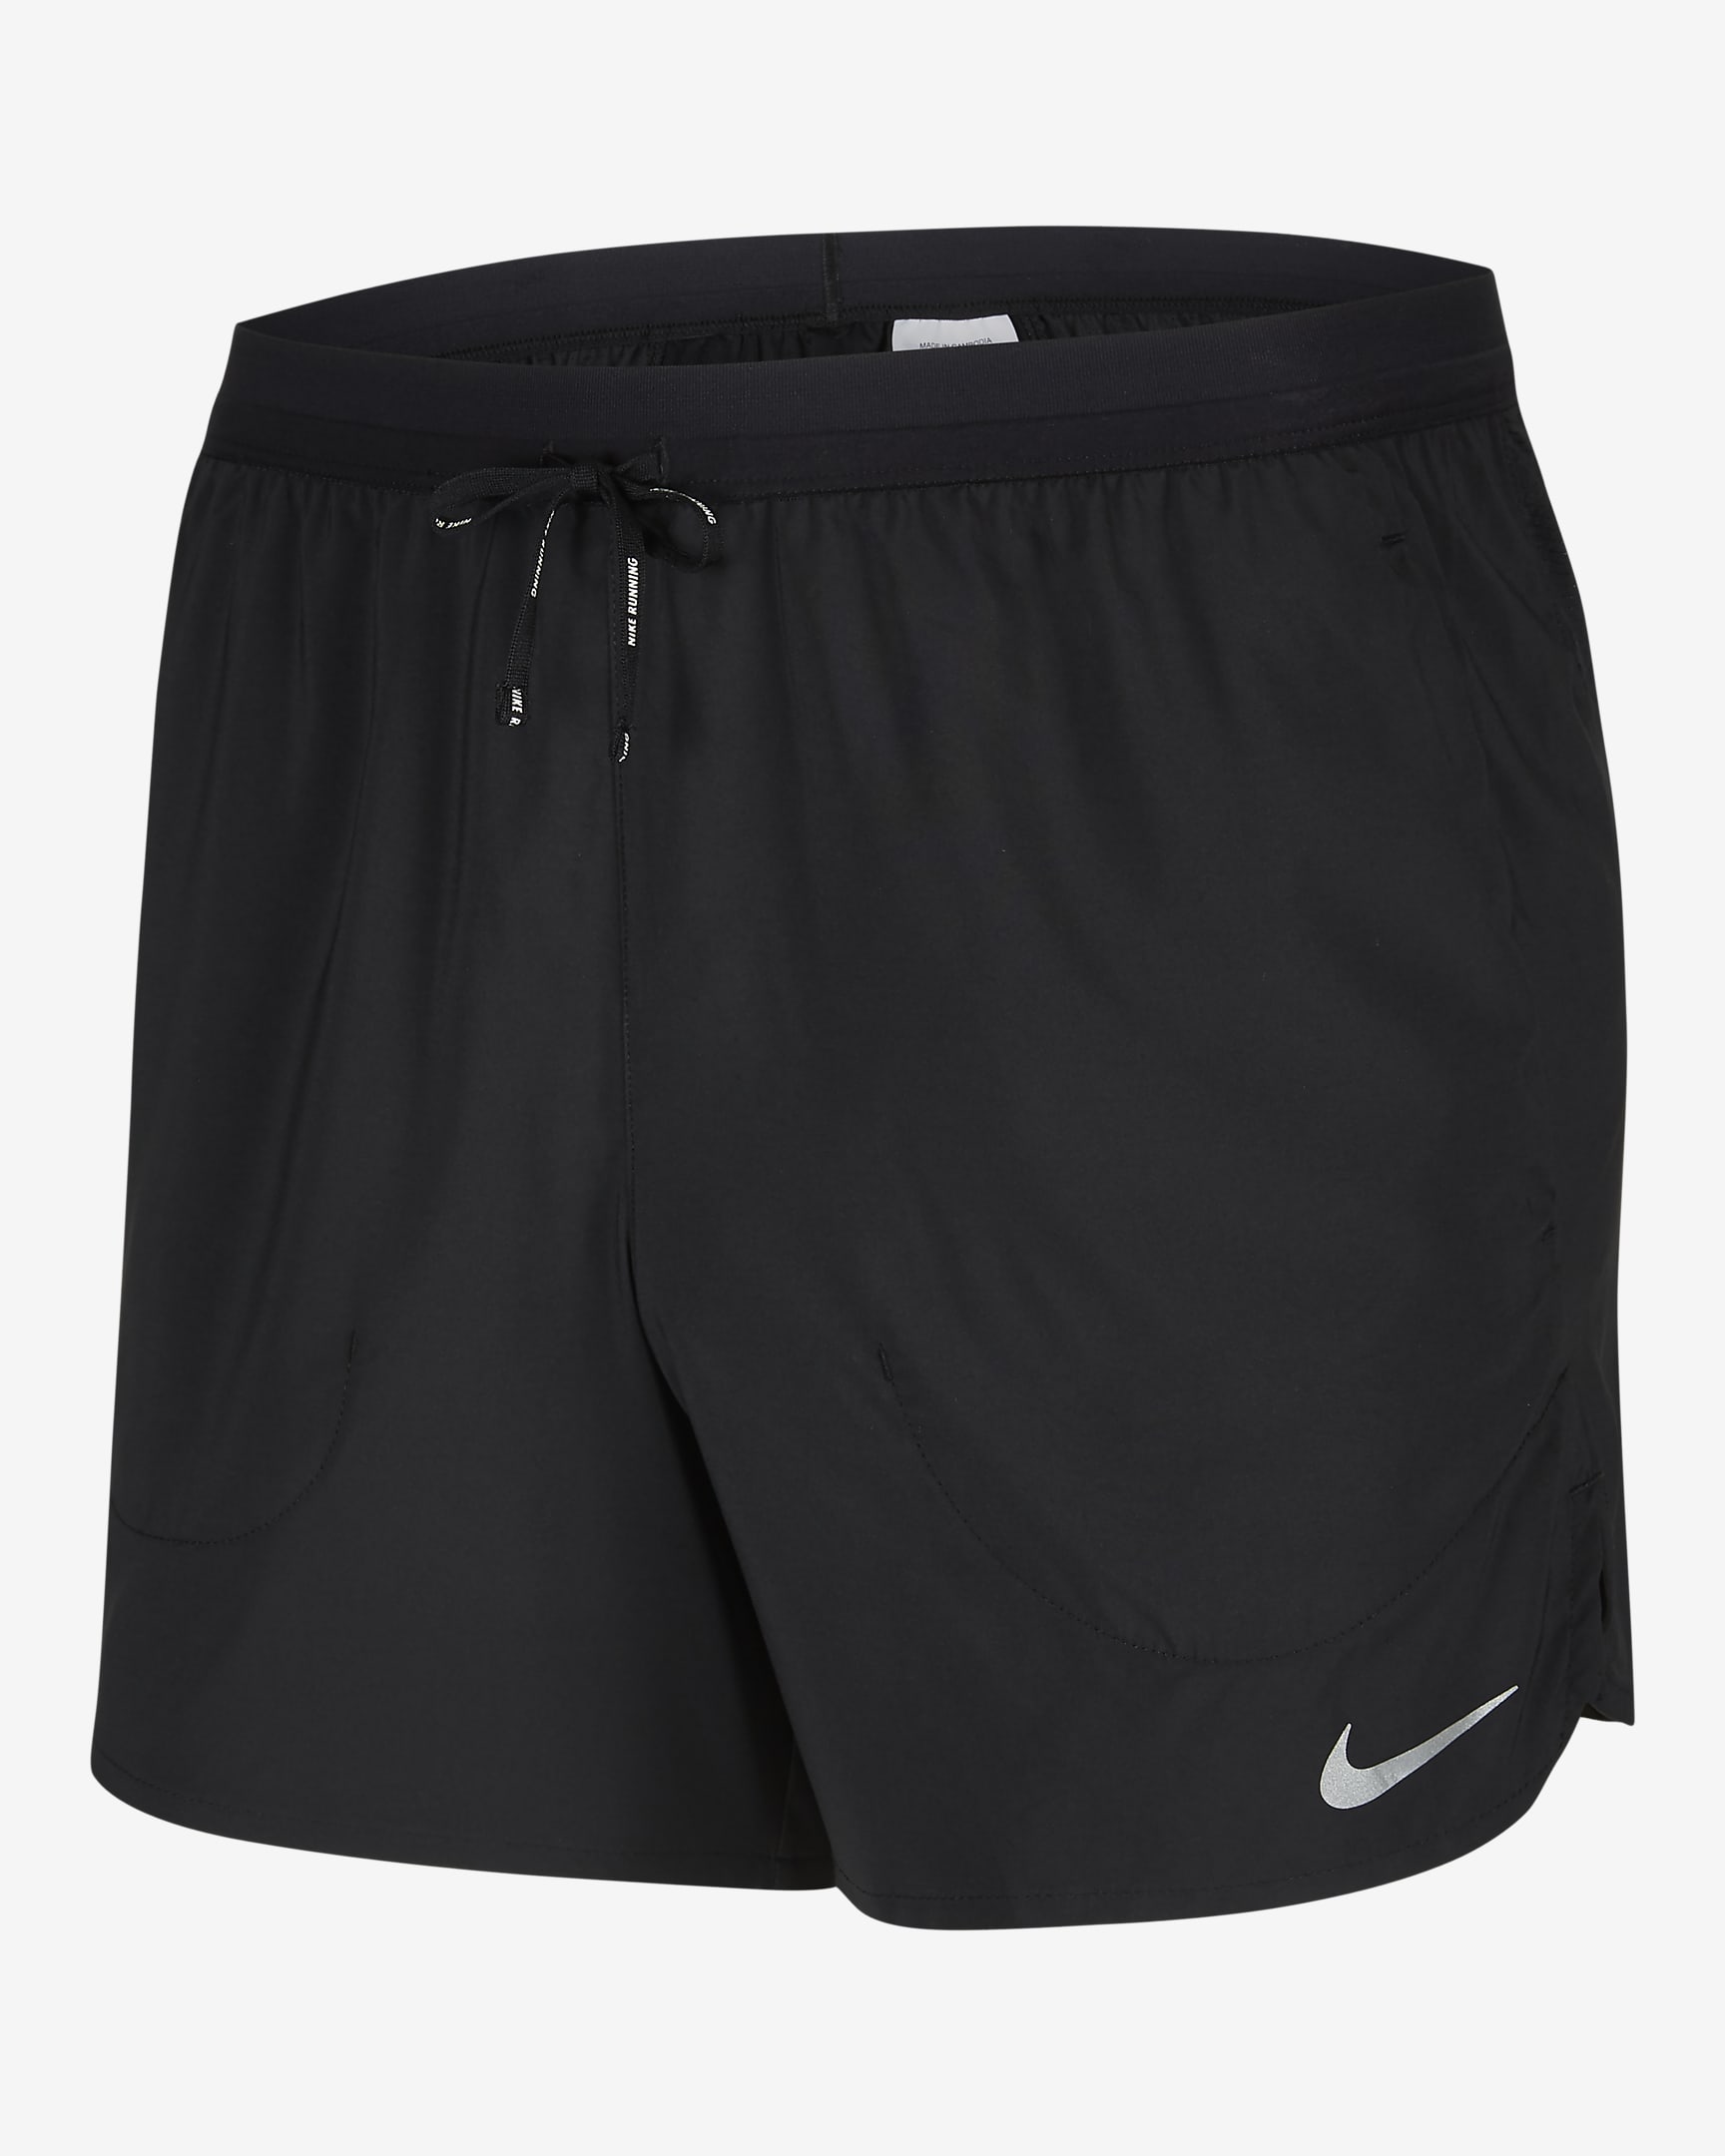 Nike Flex Stride Men's Unlined Running Shorts. Nike VN